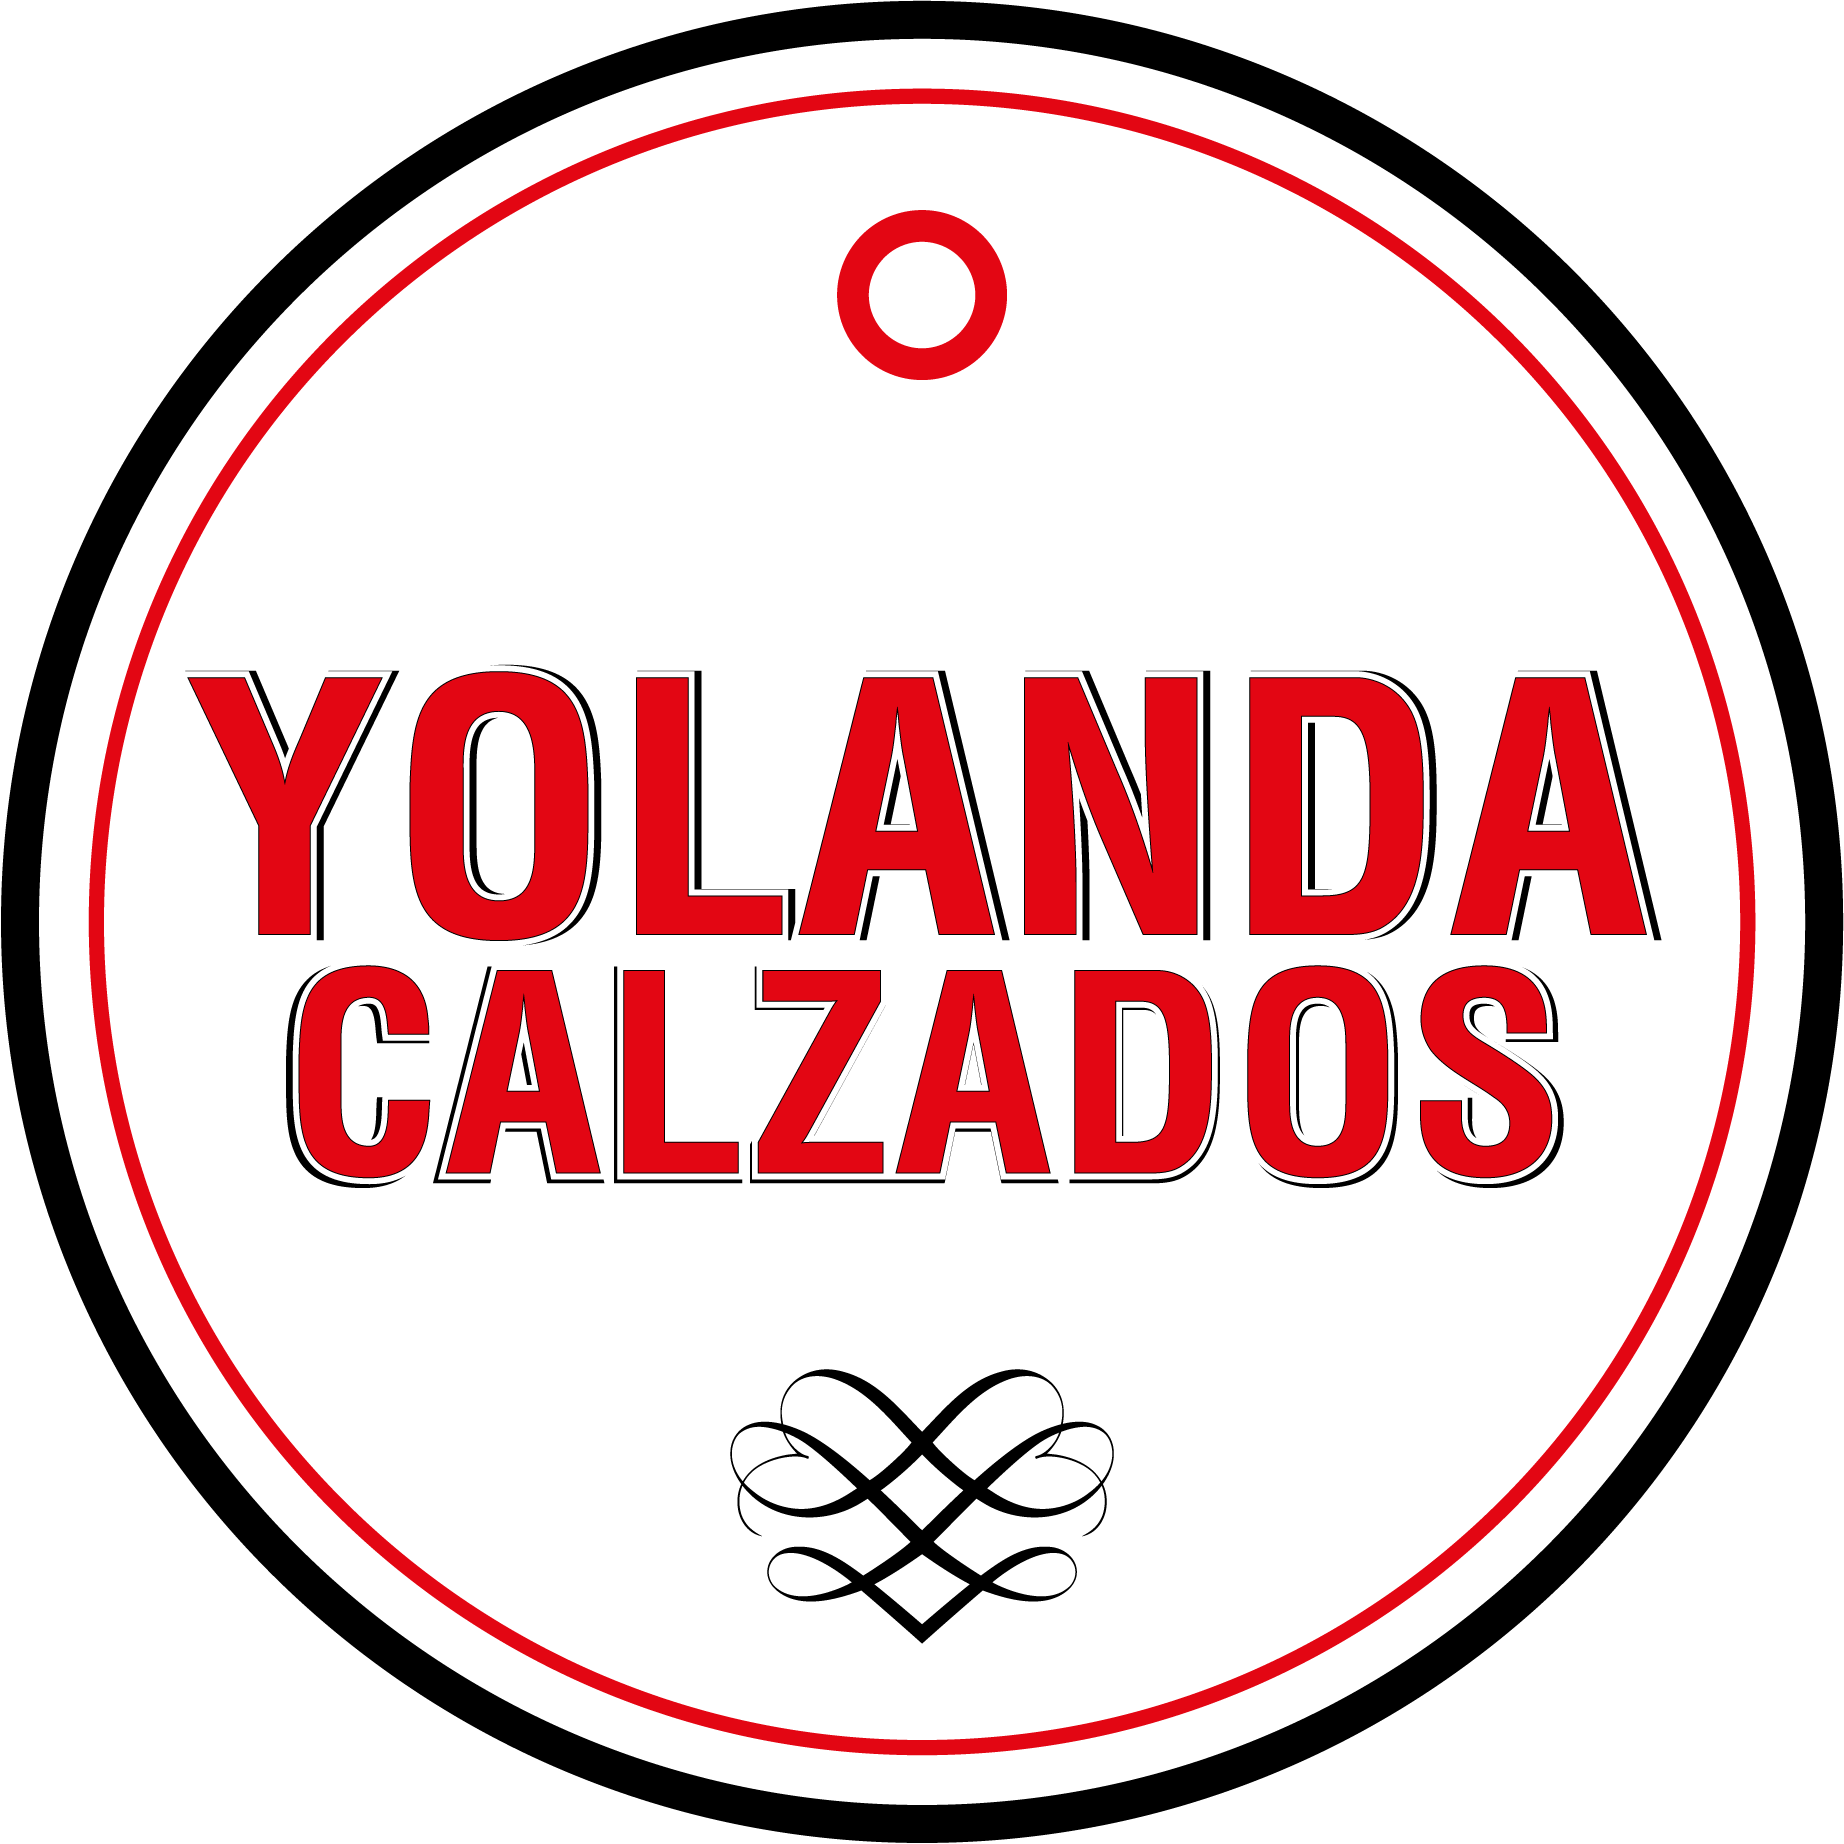 ➤ Zapatillas Deportivas Hombre Baratas - Calzados Yolanda